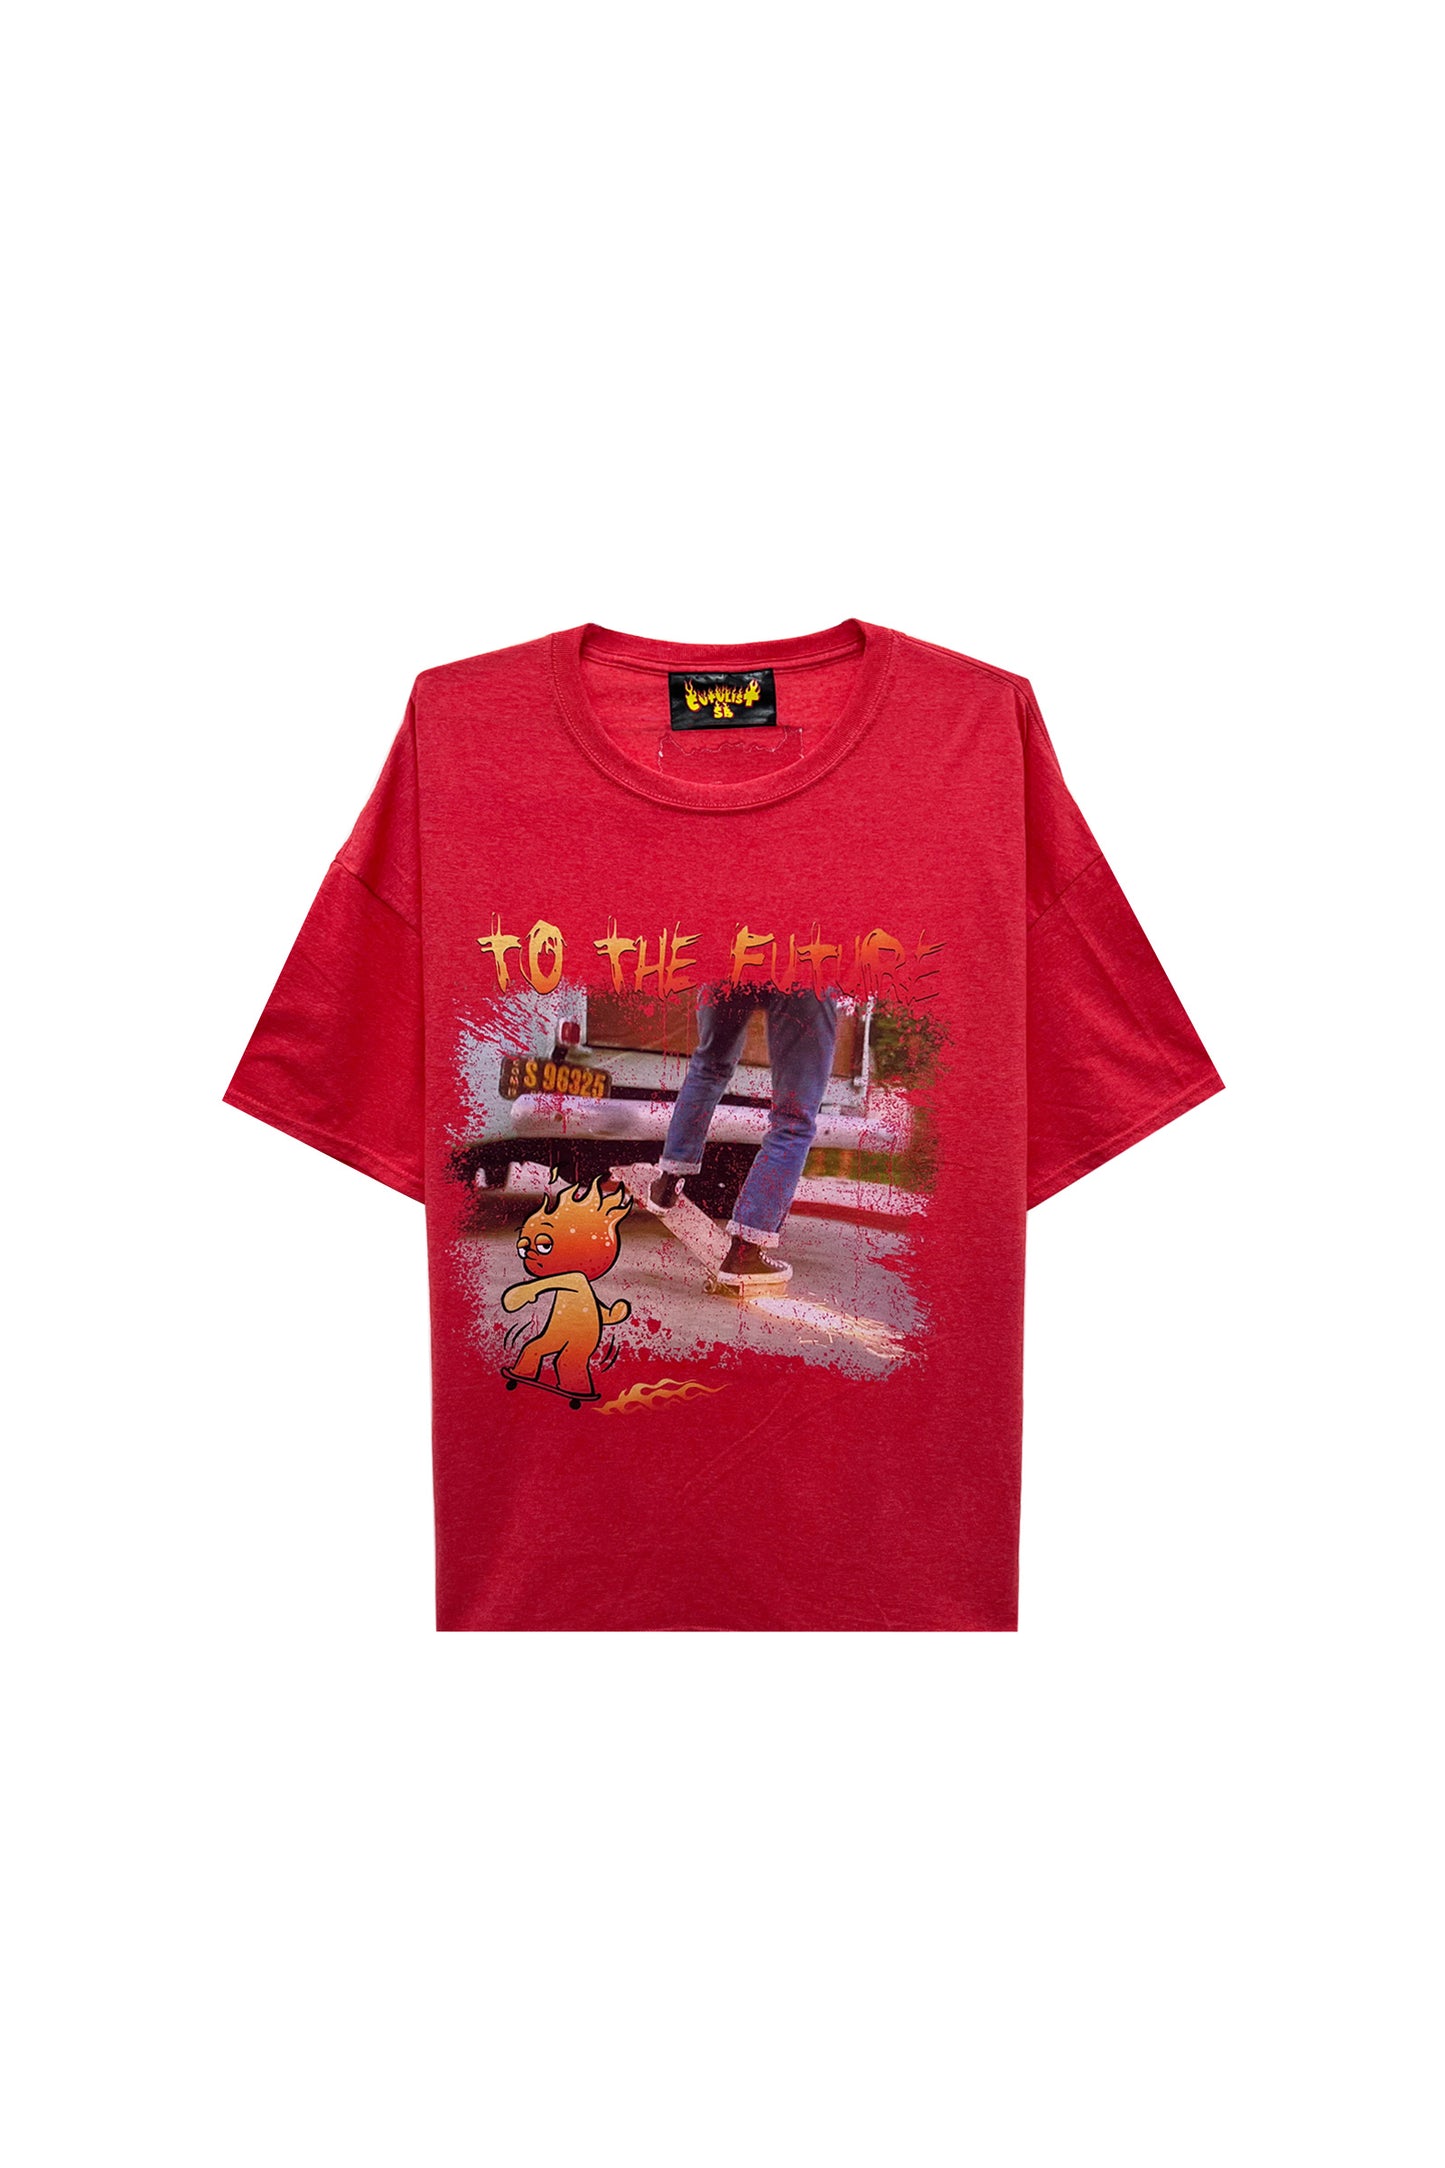 カタリストSB/ I To the Future Tee/Tシャツ/Red